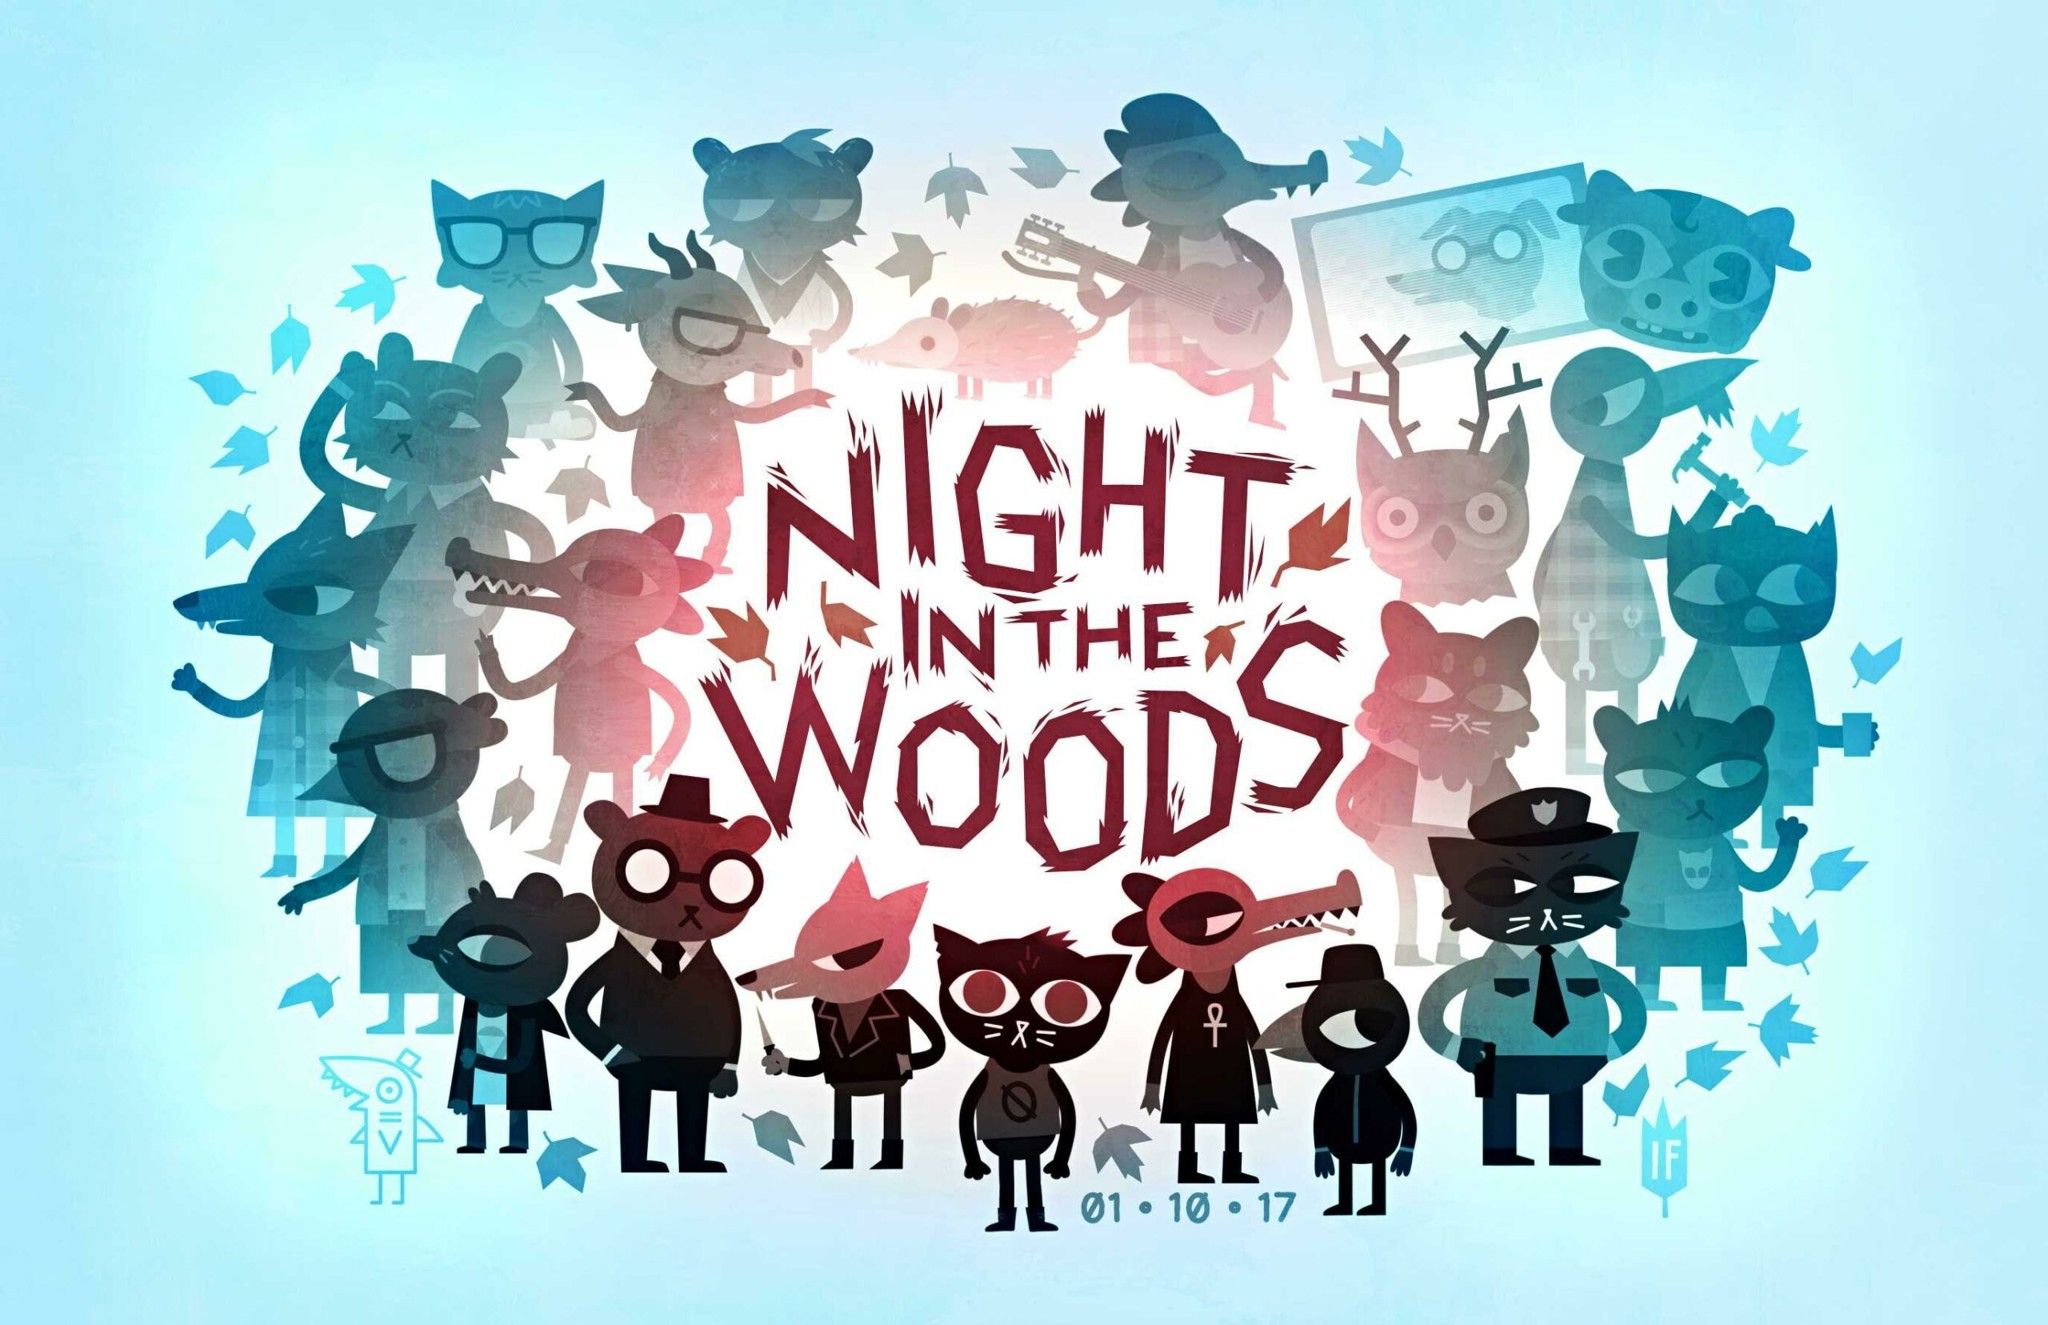 Tựa game Night in The Woods đang miễn phí, mời anh em khám phá những vấn đề nhạy cảm của xã hội